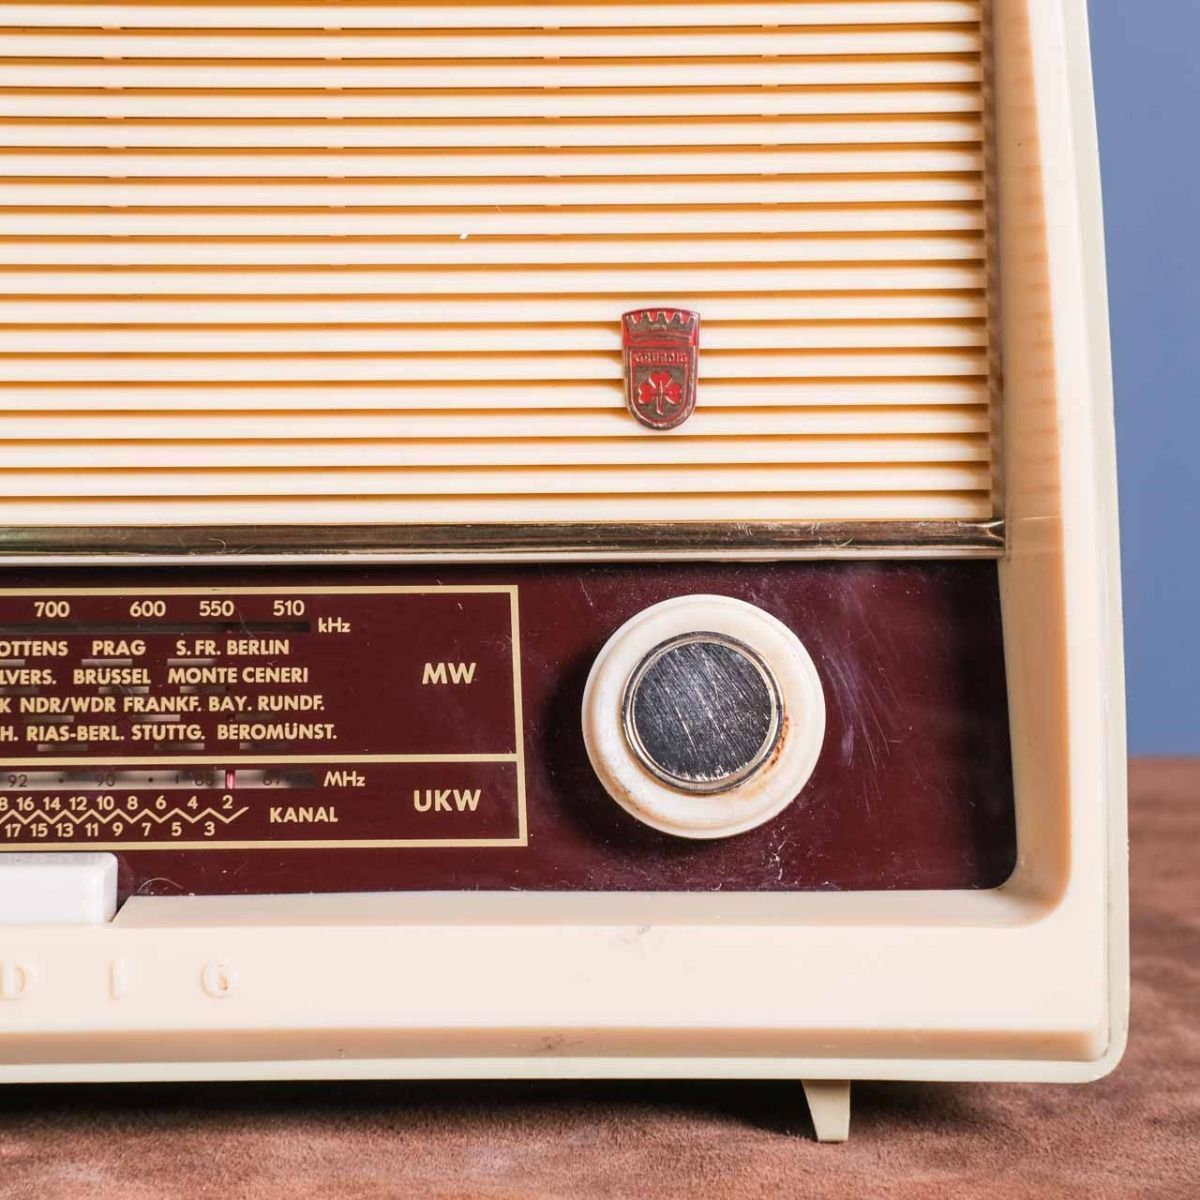 Grundig Type 88 Radio